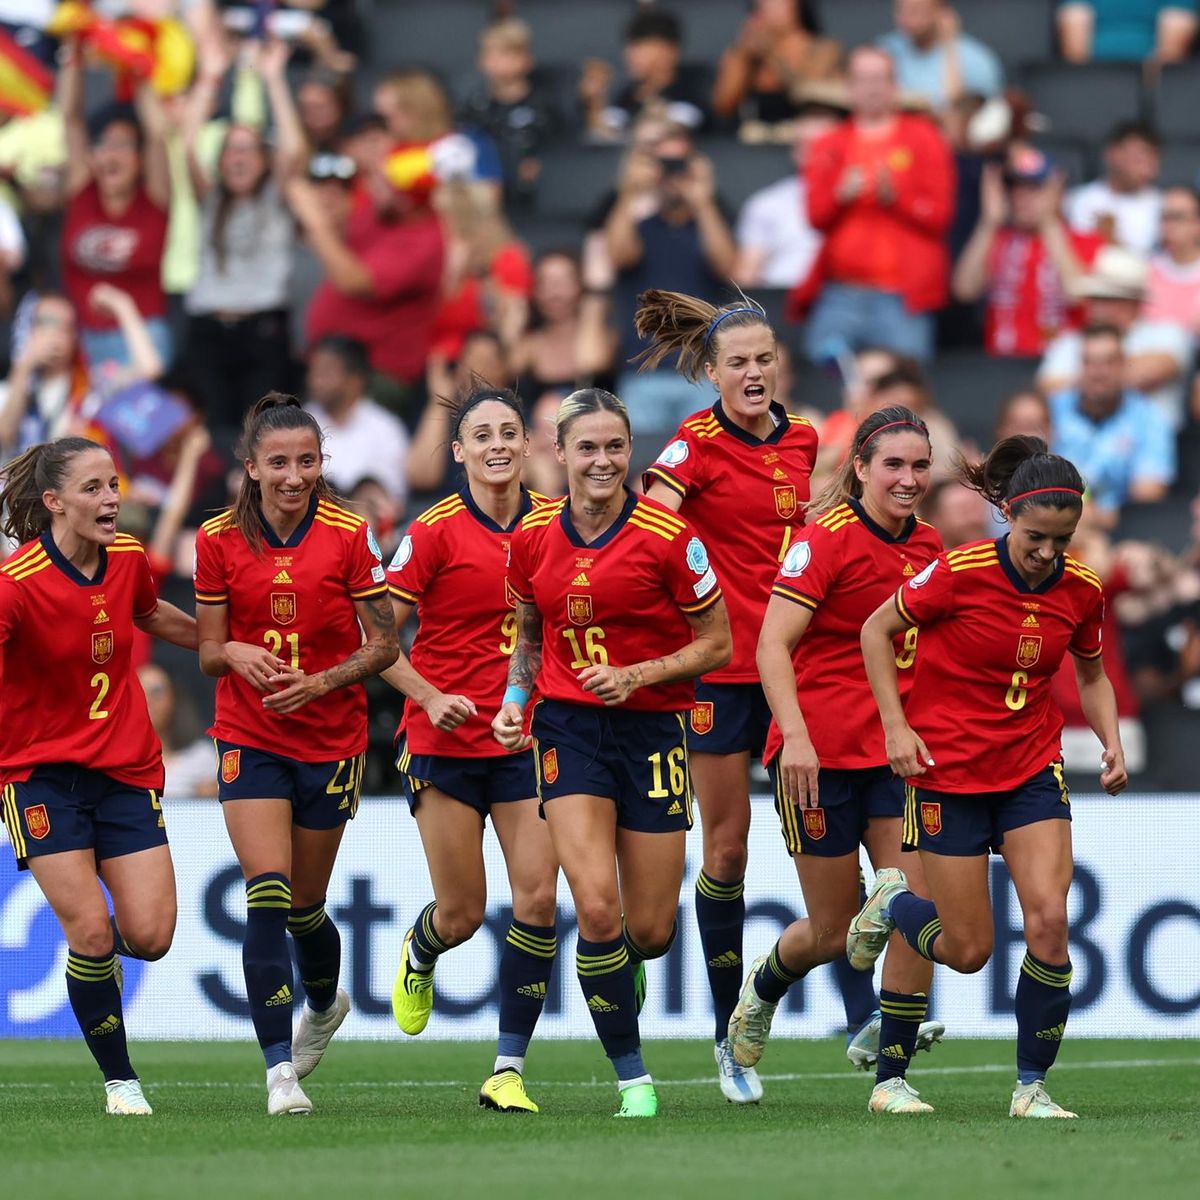 استقالة 15 لاعبة من المنتخب الاسباني بسبب المدرب خورخي فيلدا